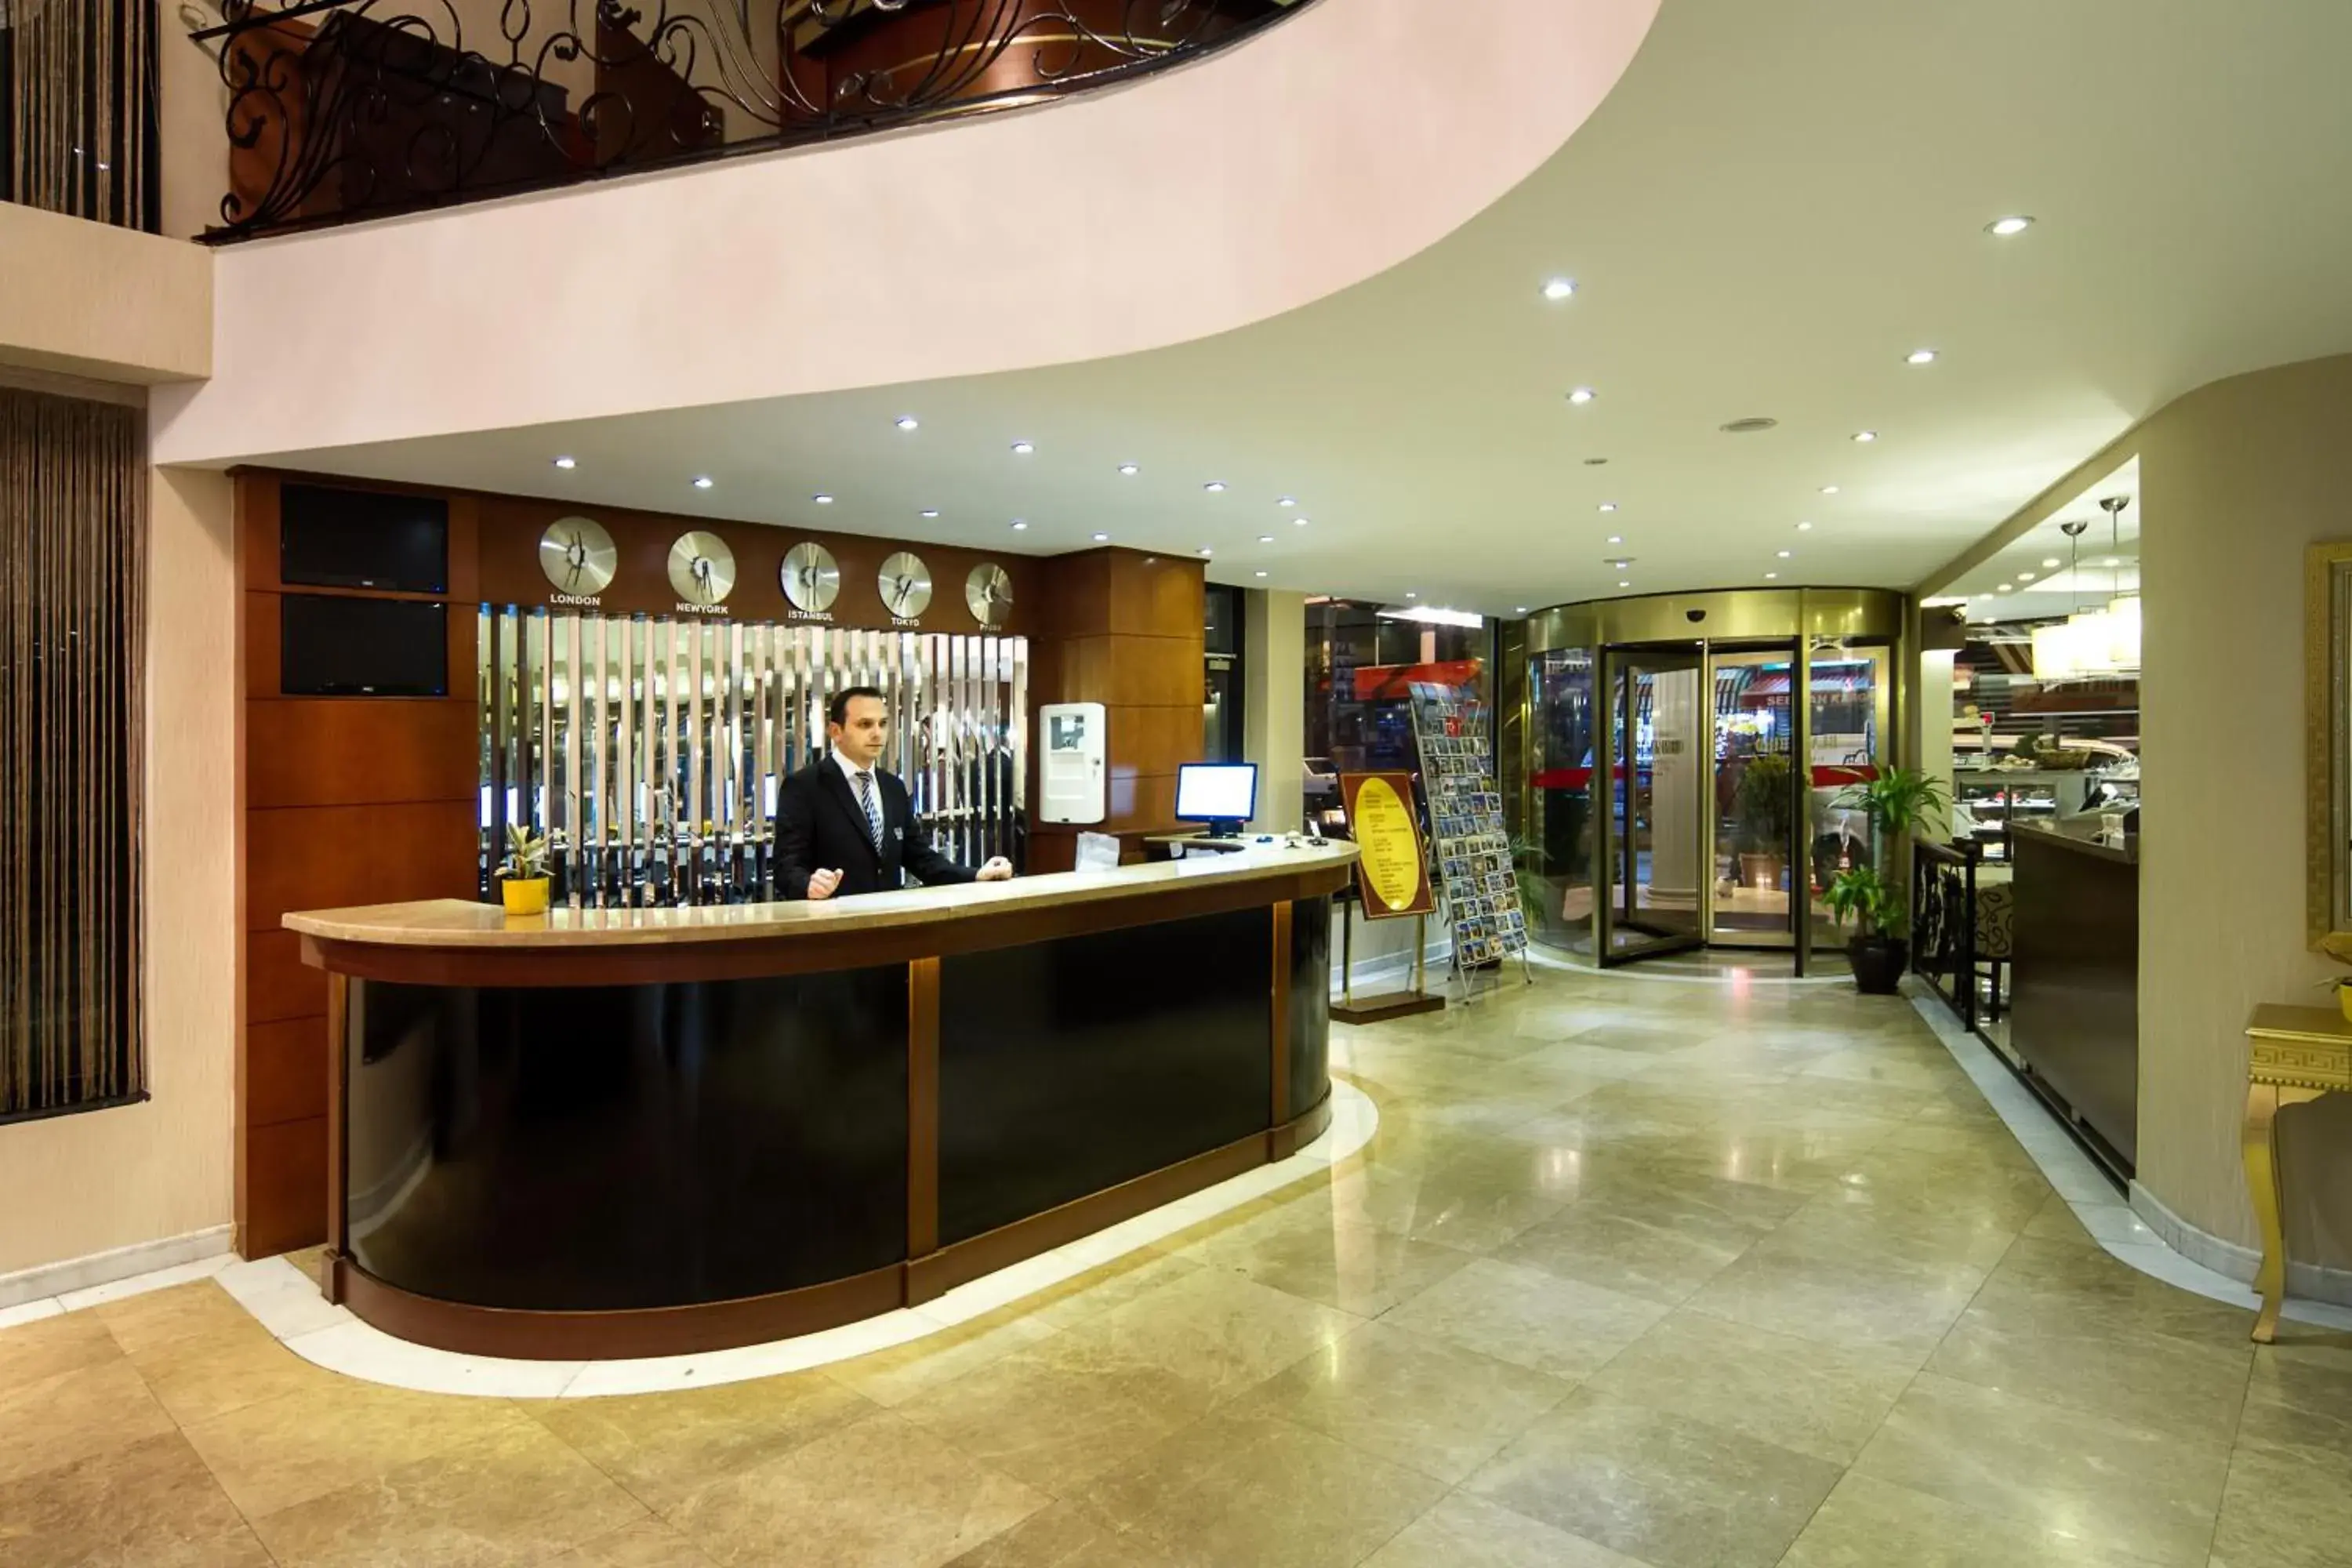 Lobby or reception, Lobby/Reception in Black Bird Hotel